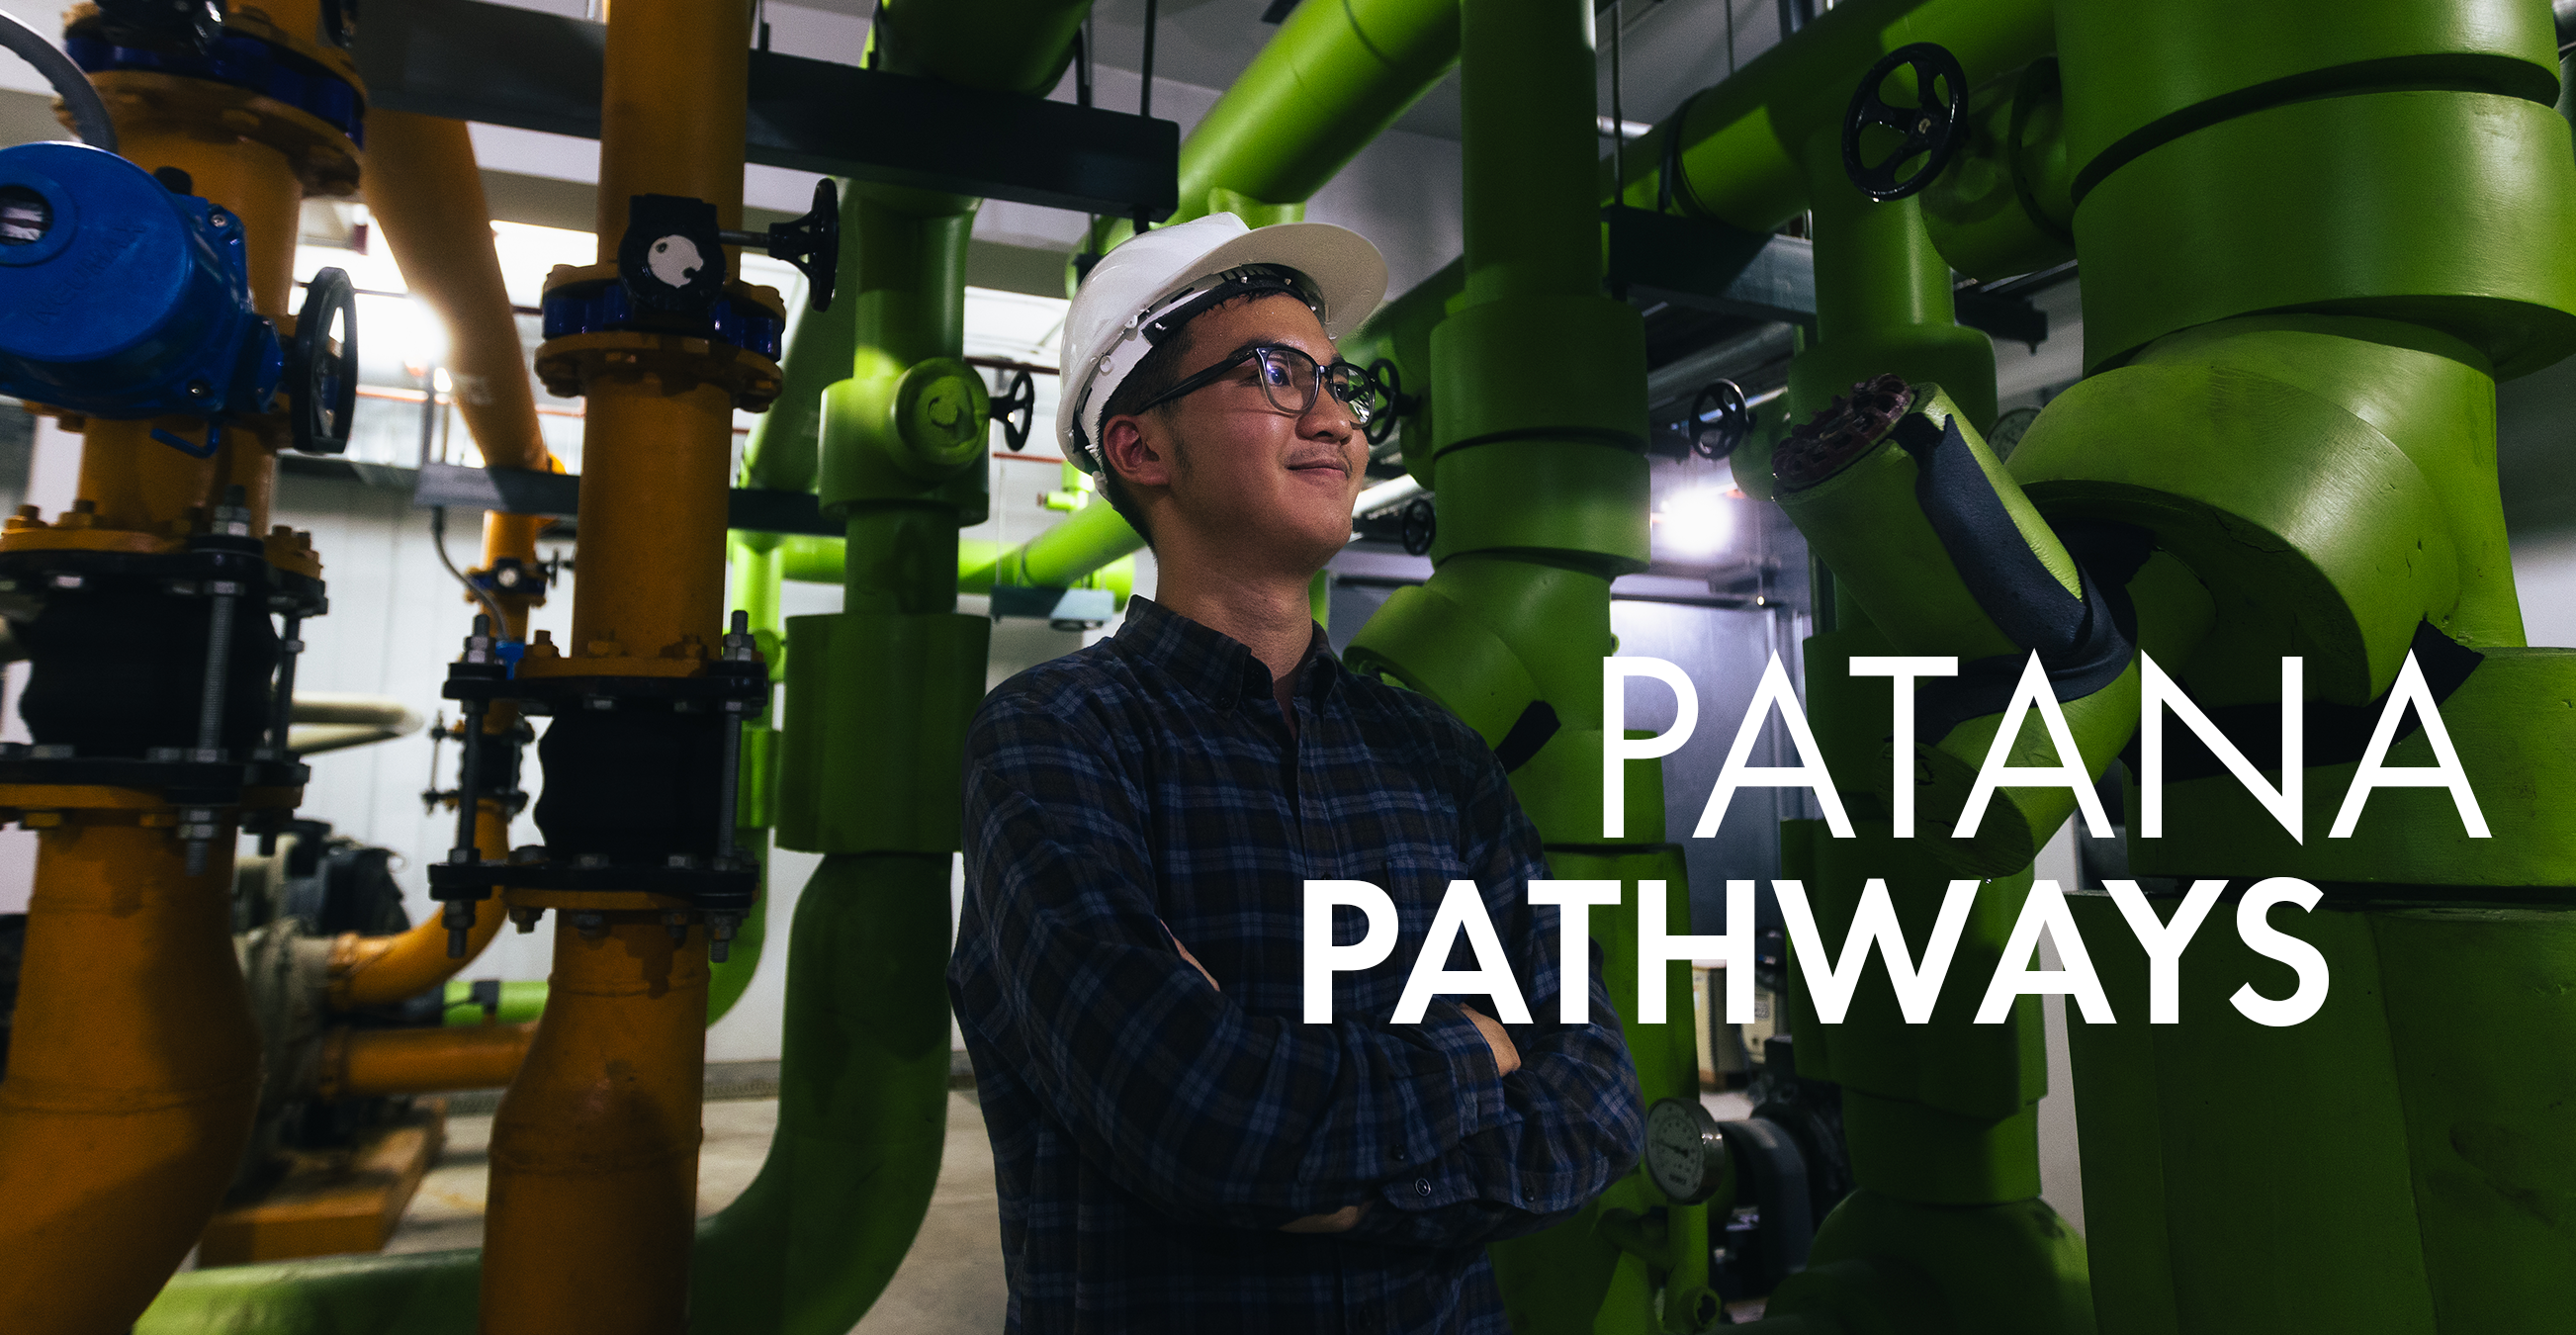 Patana Pathways – Johnny